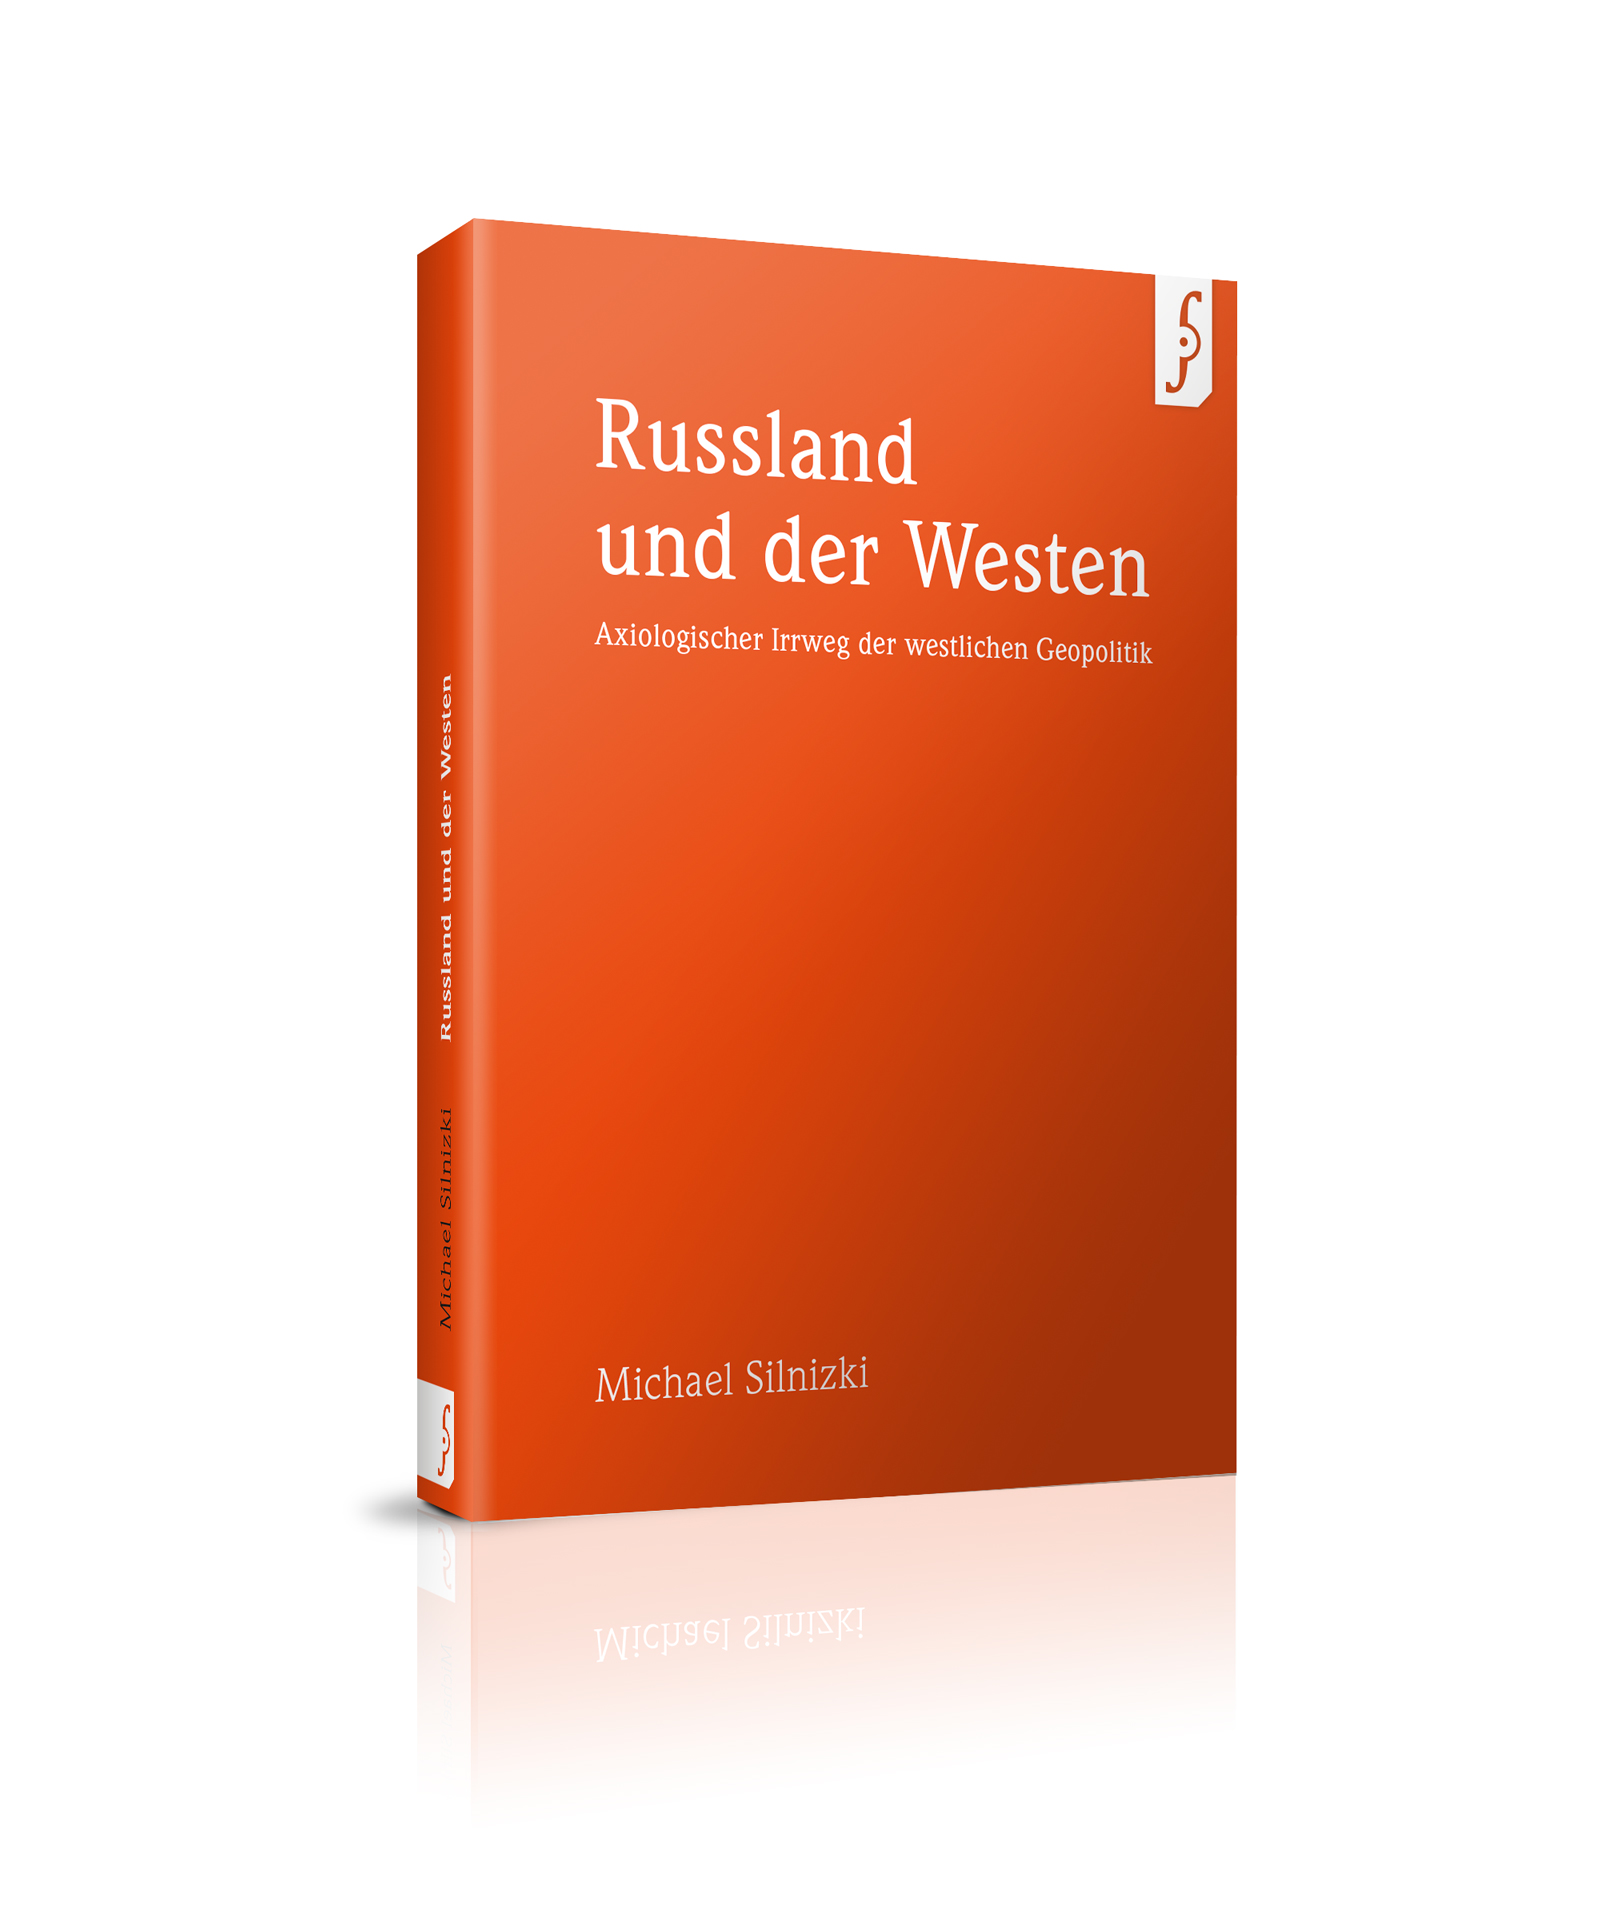 Russland und der Westen - ISBN 978-3-9816169-8-9, 84 S. 9,95 € (D)